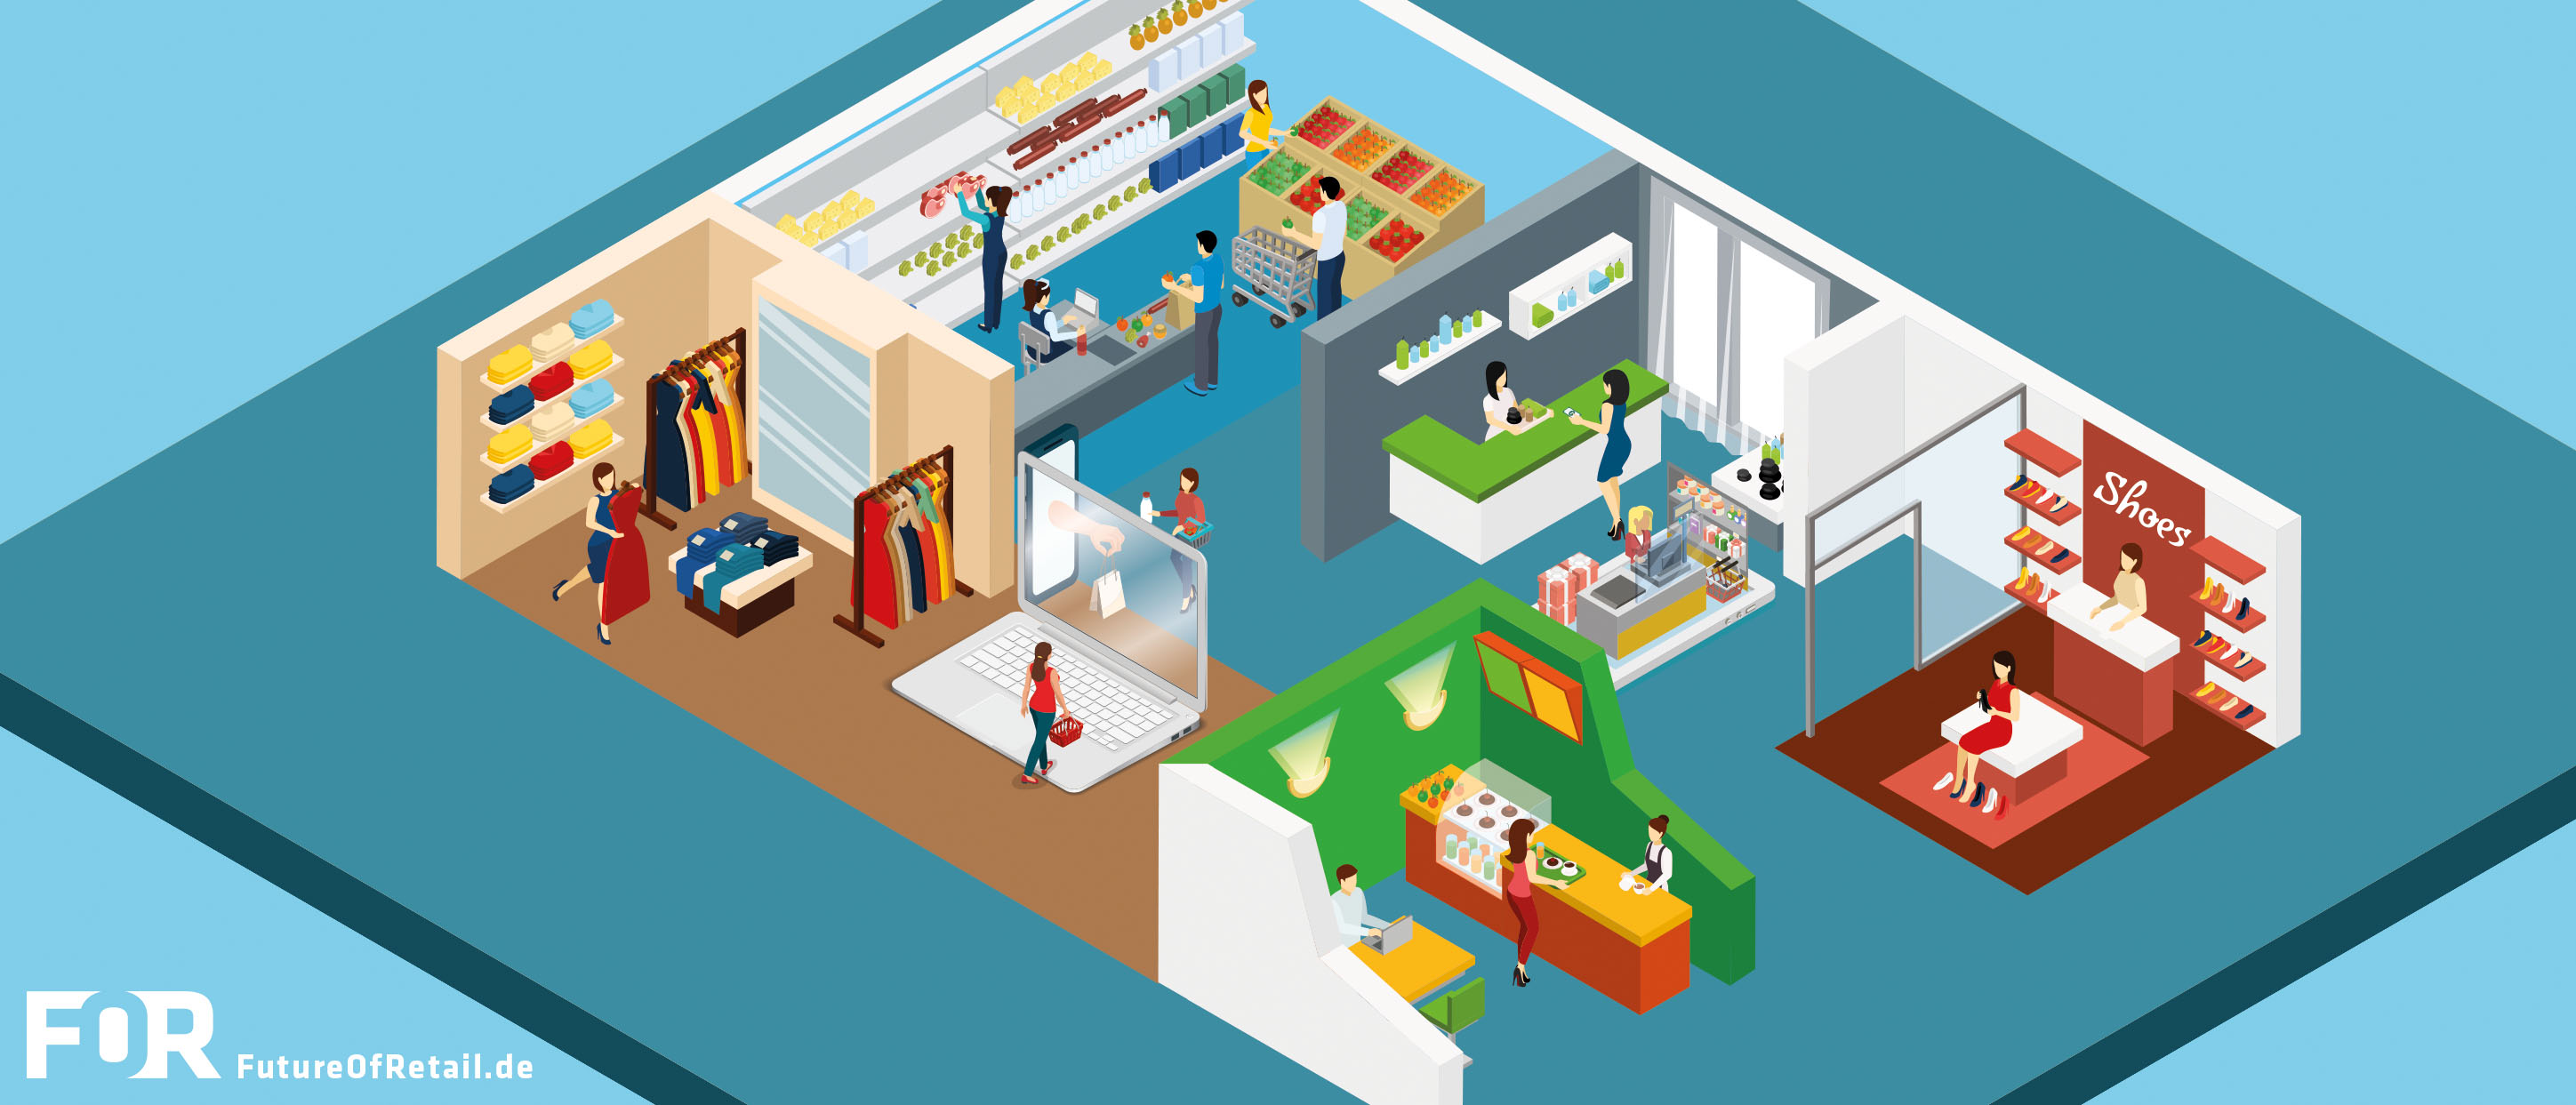 E-Commerce setzt auf Läden vor Ort – Die Digitalisierung des gesamten Einkaufserlebnisses hat längst begonnen.